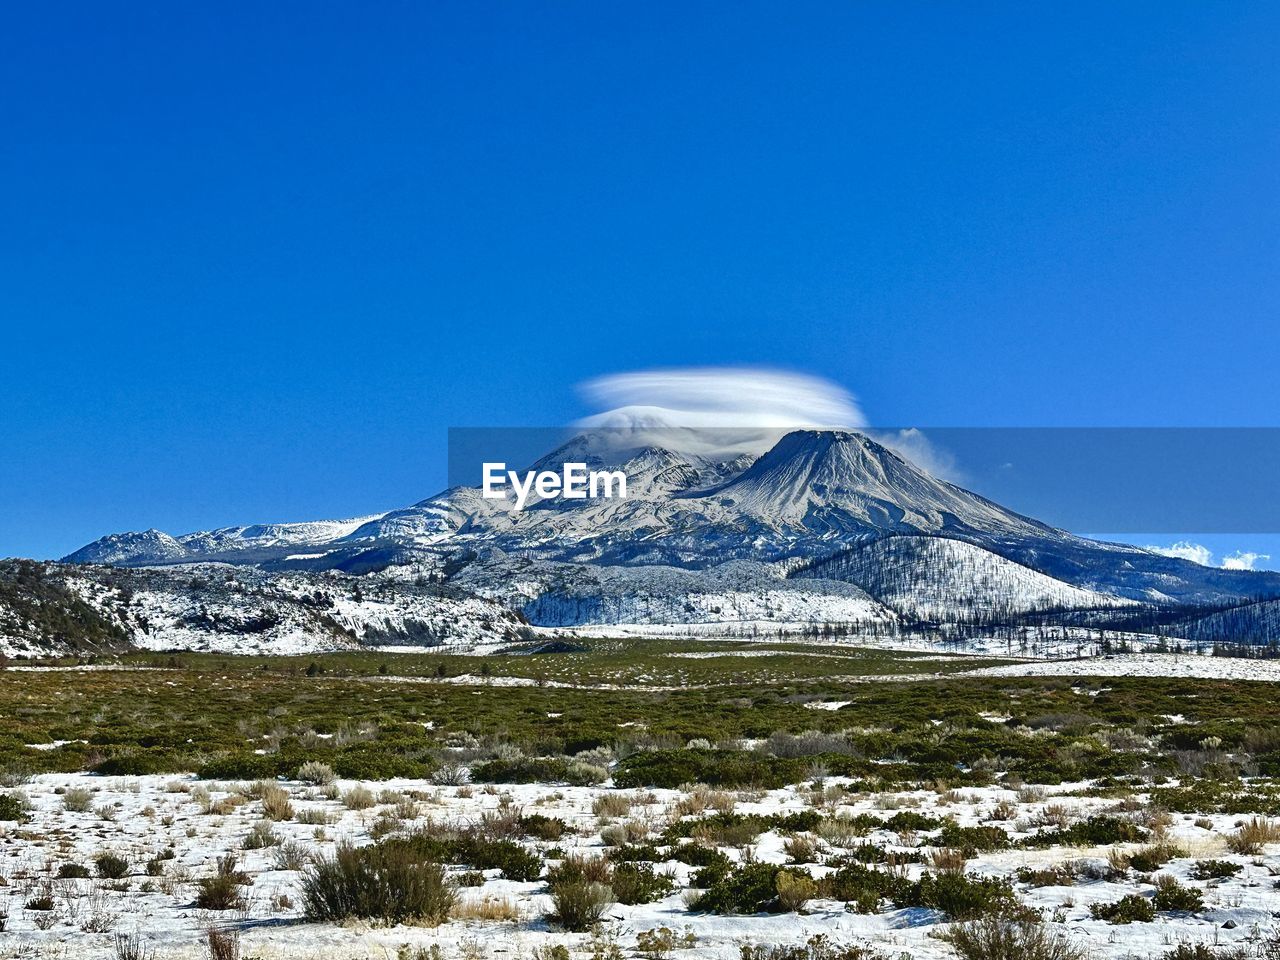 Mount shasta lenticular cloud